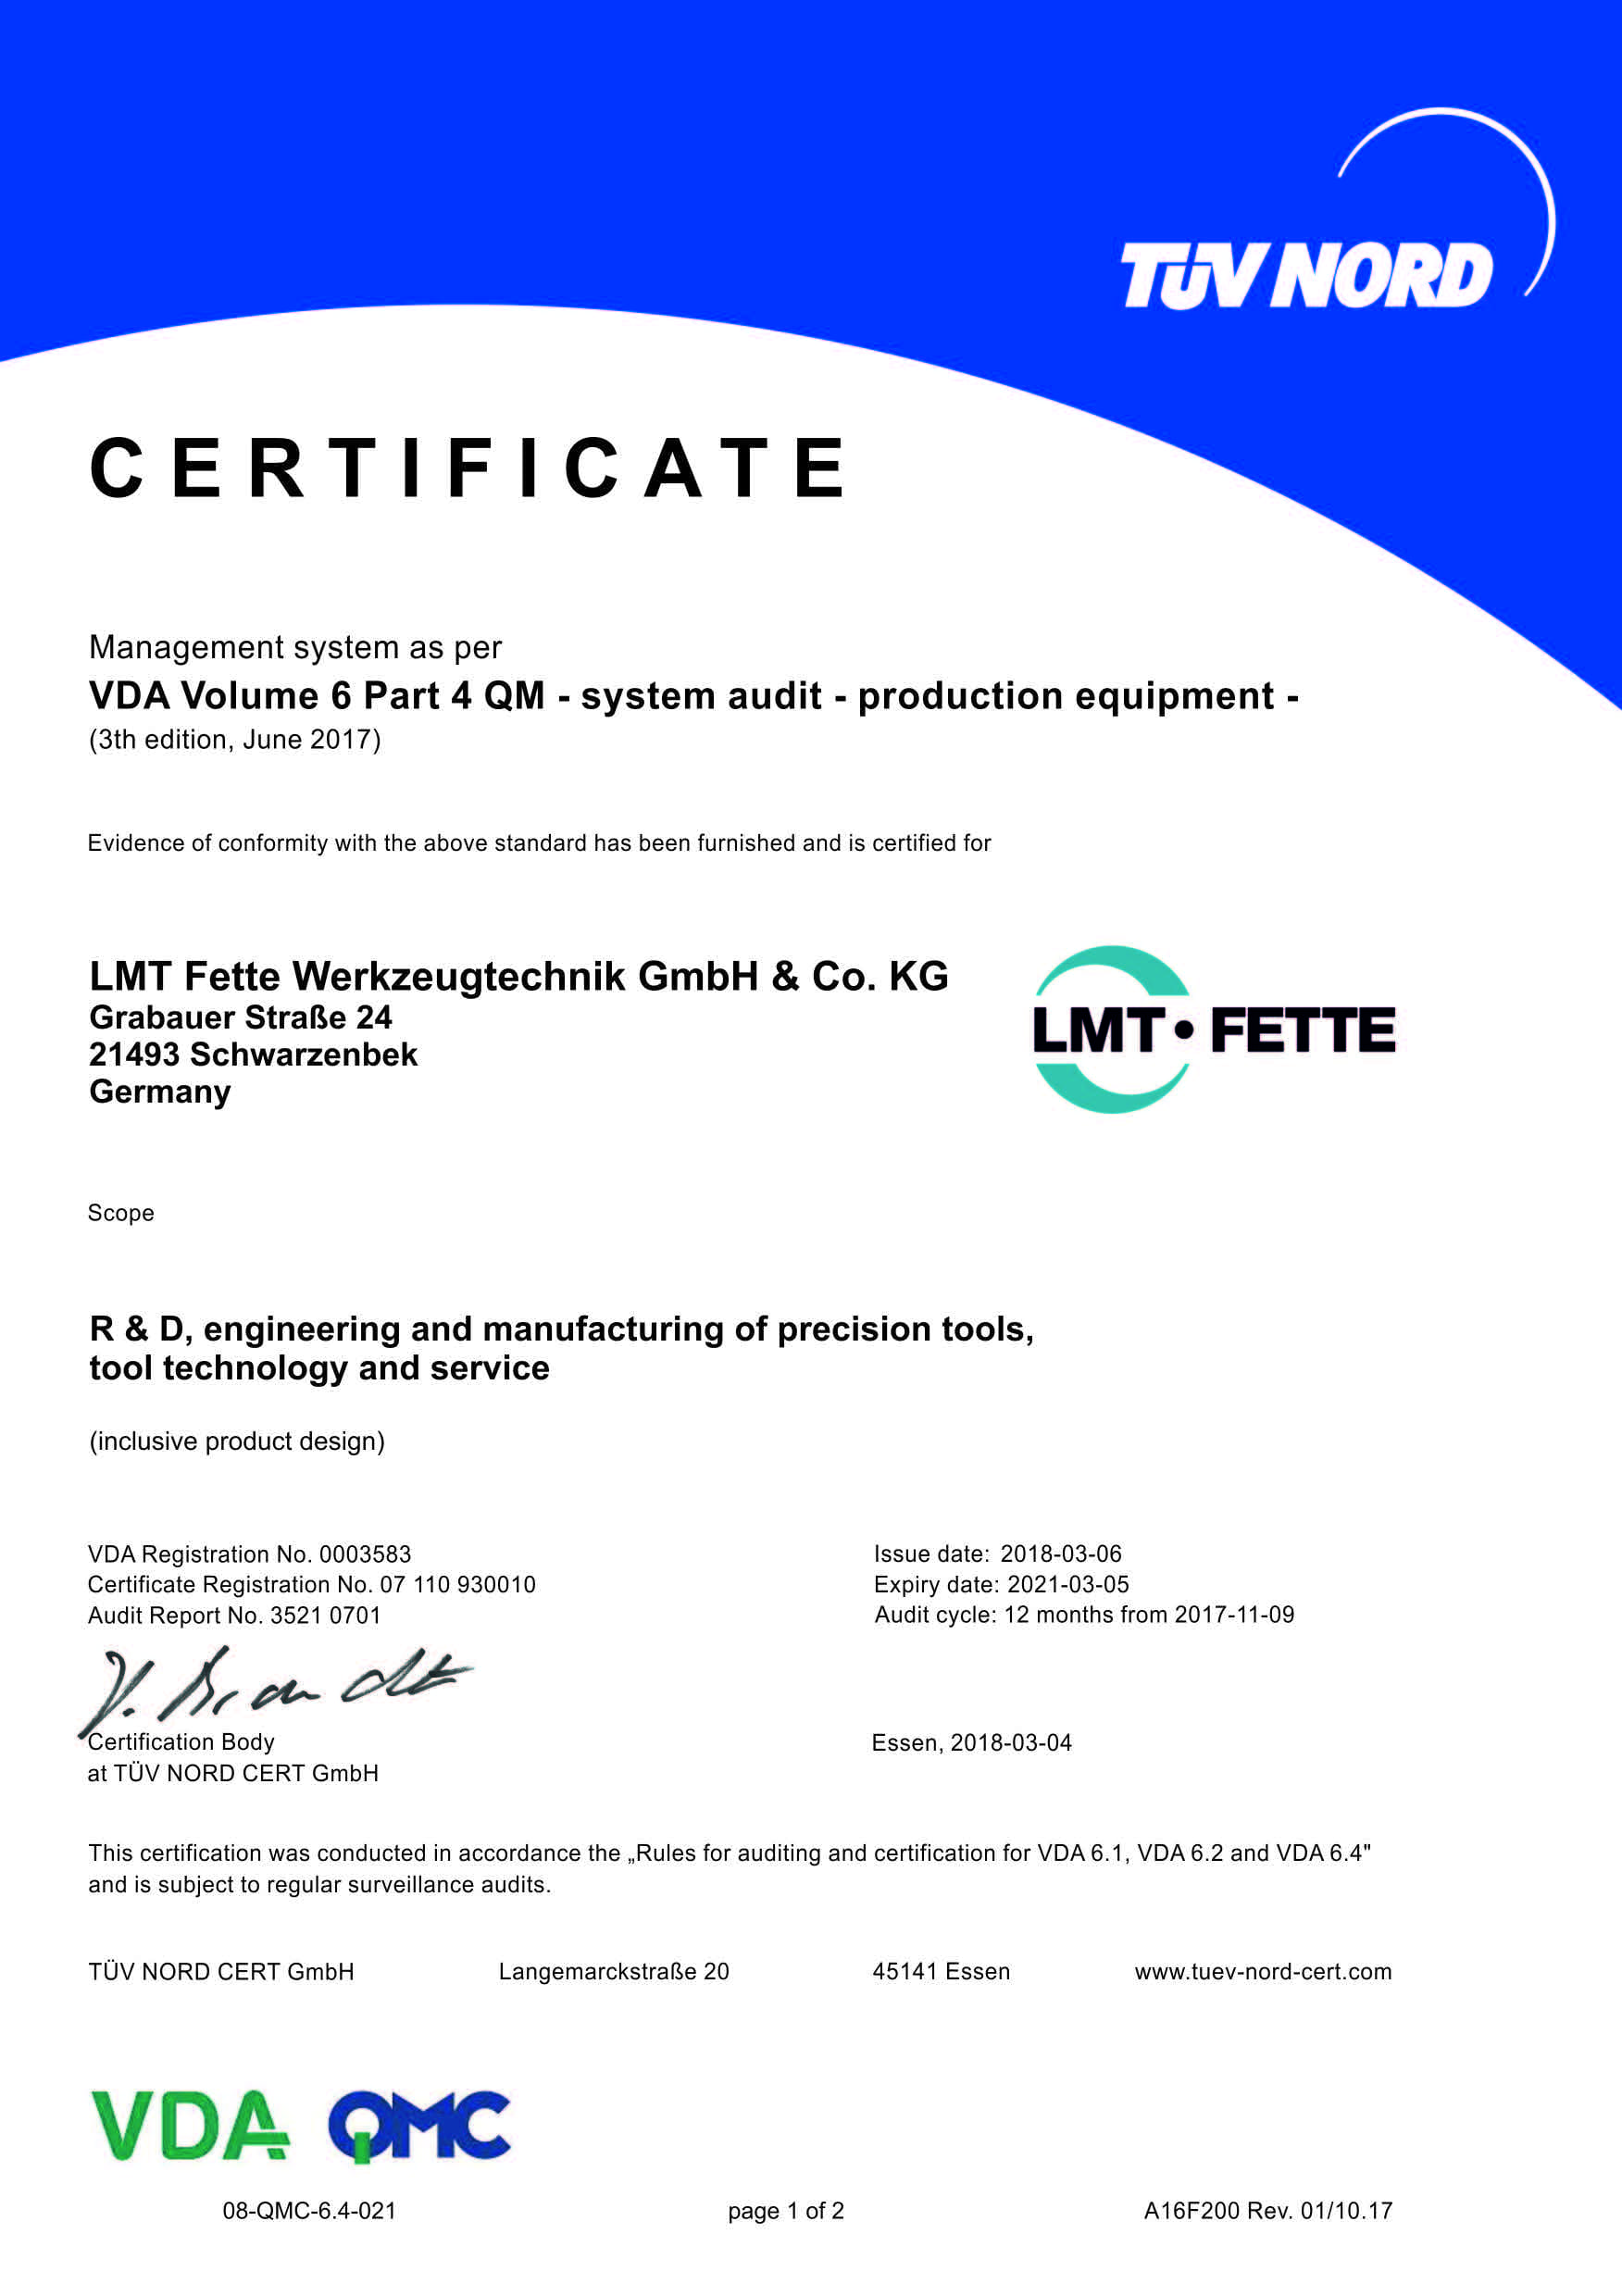 Management System as per VDA Vol. 6 Part 4 QM - LMT Fette Werkzeugtechnik GmbH & Co. KG